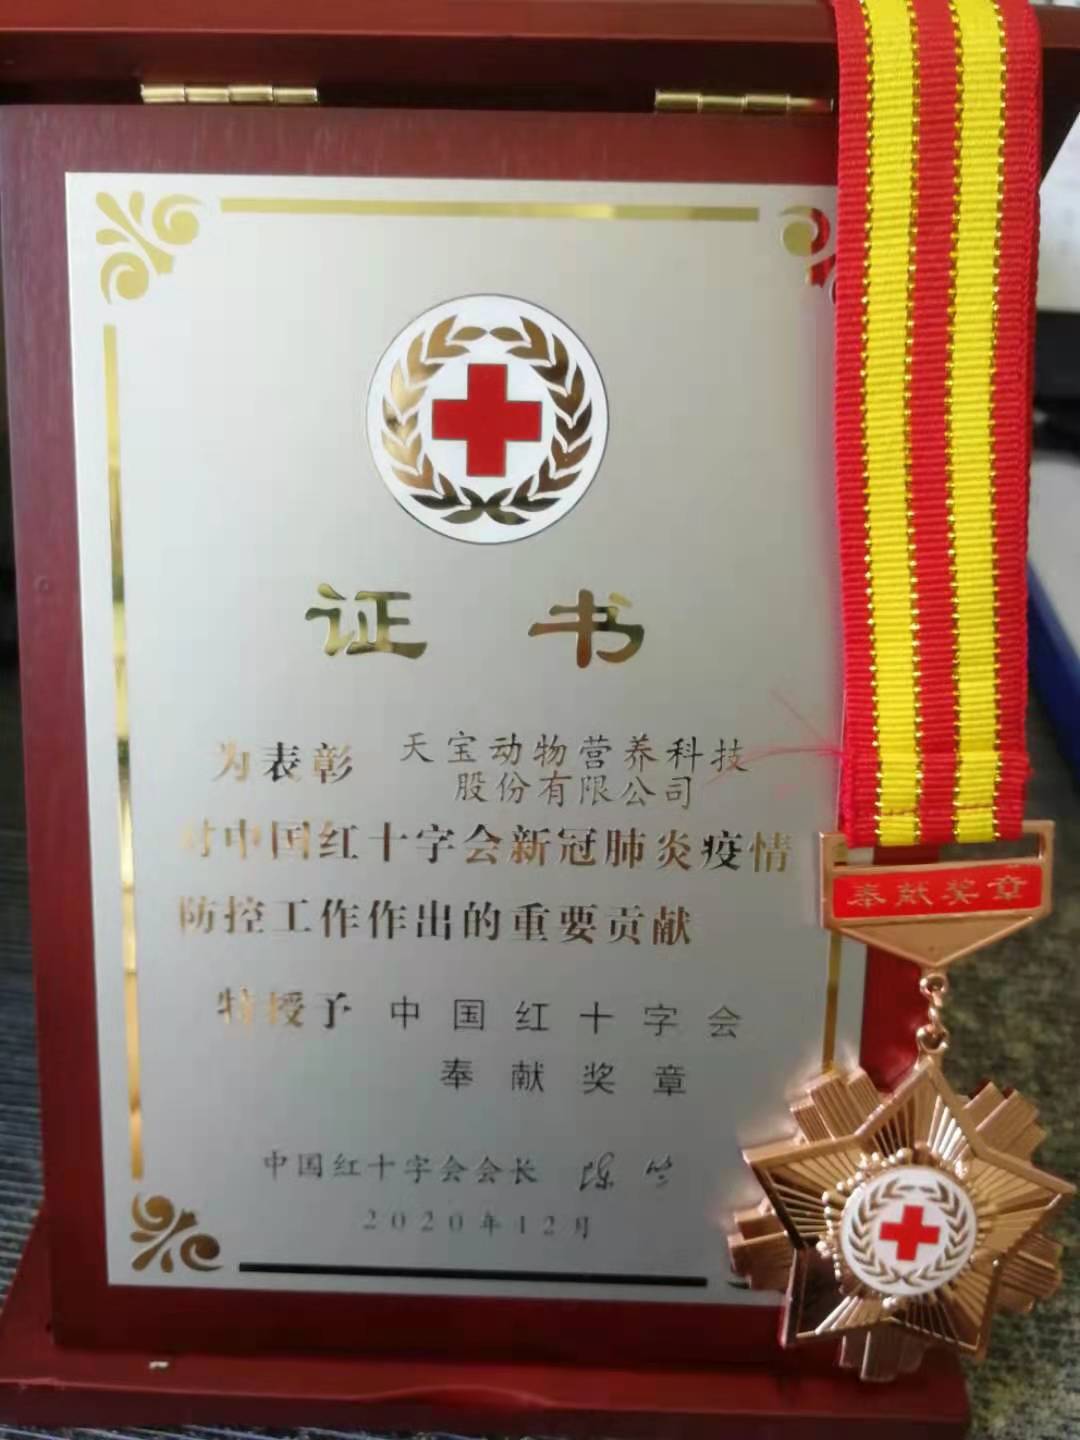 为表彰天宝动物营养科技股份有限公司对中国红十字会新冠肺炎疫情防控工作做出的重要贡献，特授予中国红十字会奖章